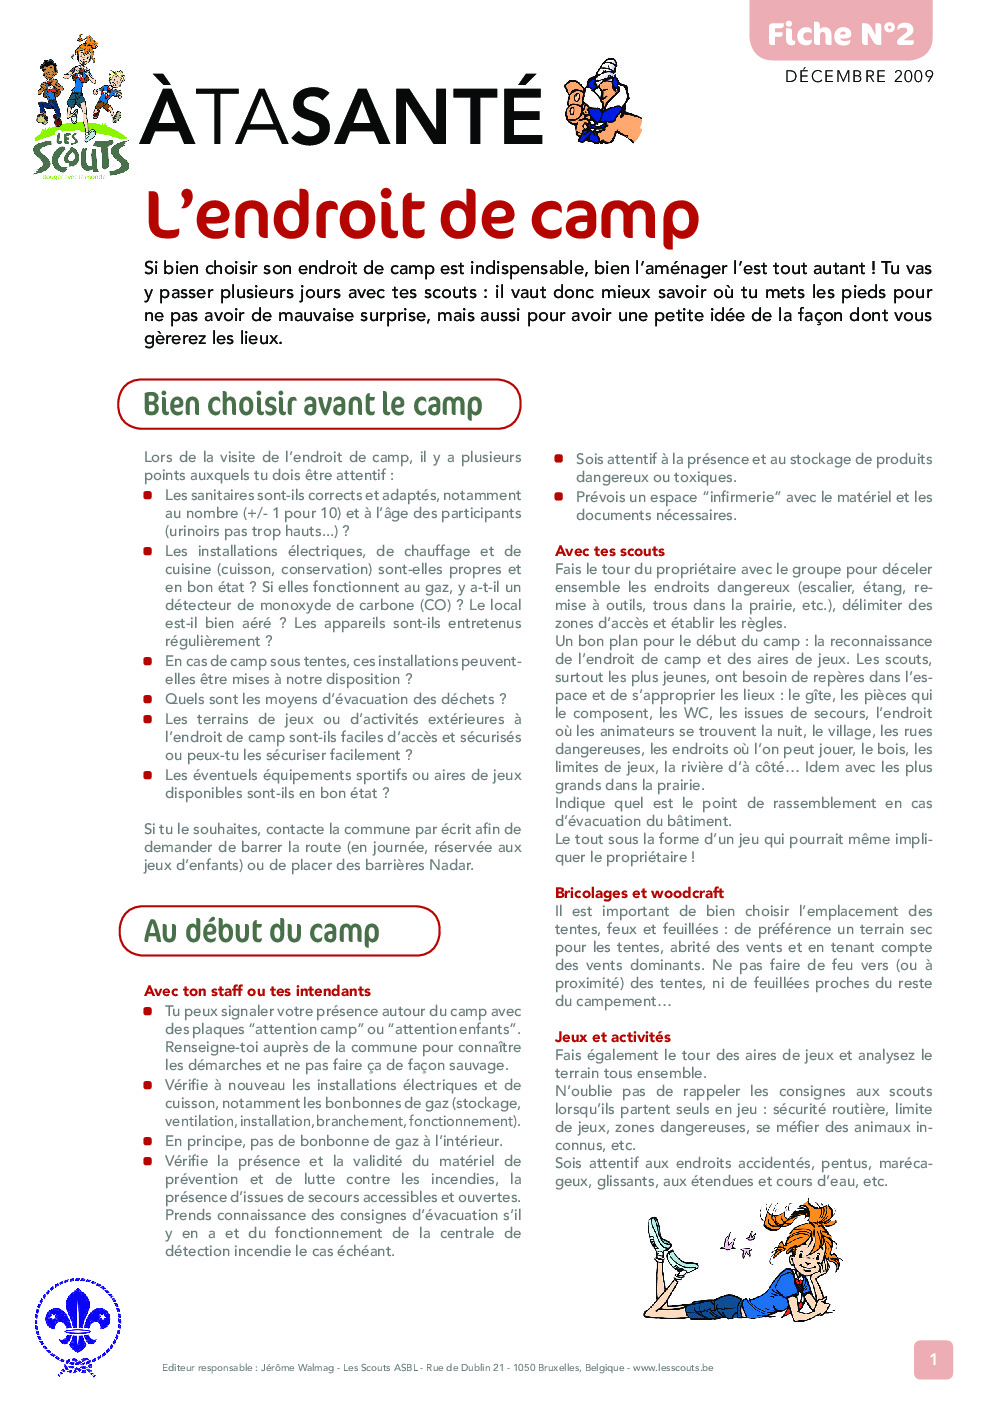 ATS_2_L_endroit_de_camp.pdf